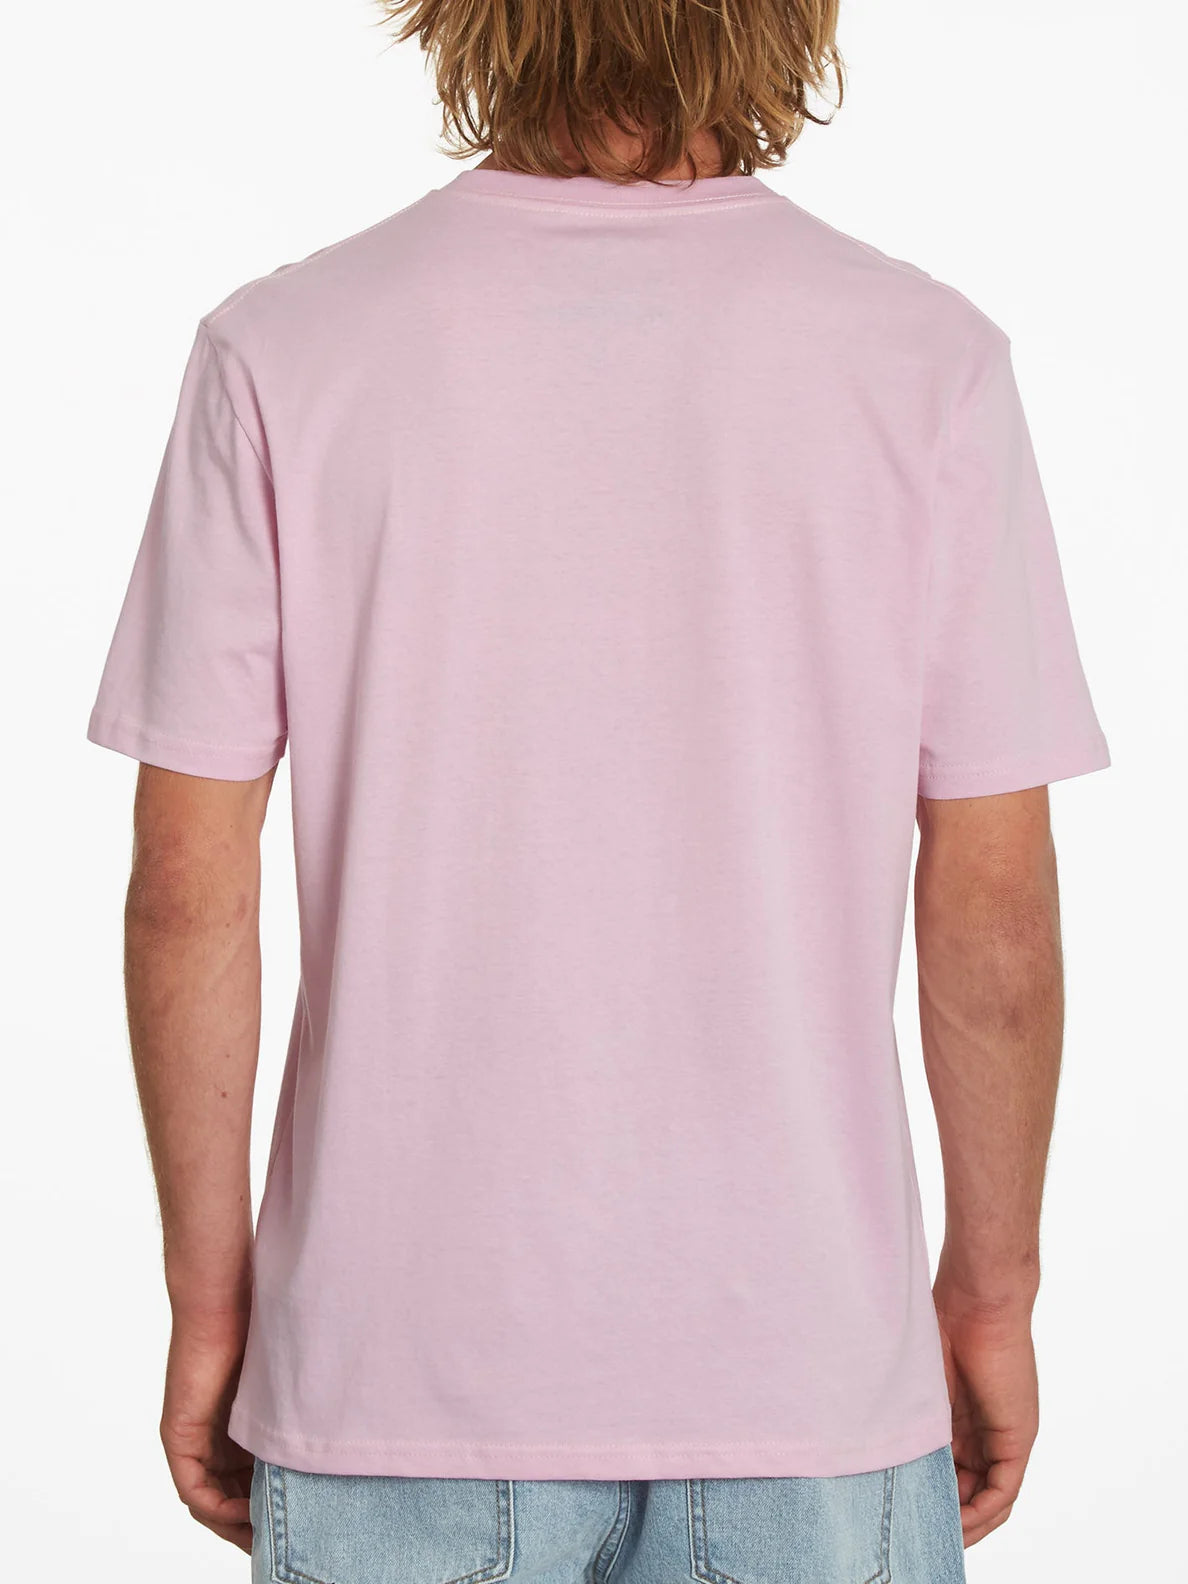 T-shirt rose Volcom Finkstone Paradise | Boutique Volcom | Collection_Zalando | Nouveaux produits | Produits les plus récents | Produits les plus vendus | t-shirts pour hommes | T-shirts à manches courtes pour hommes | surfdevils.com